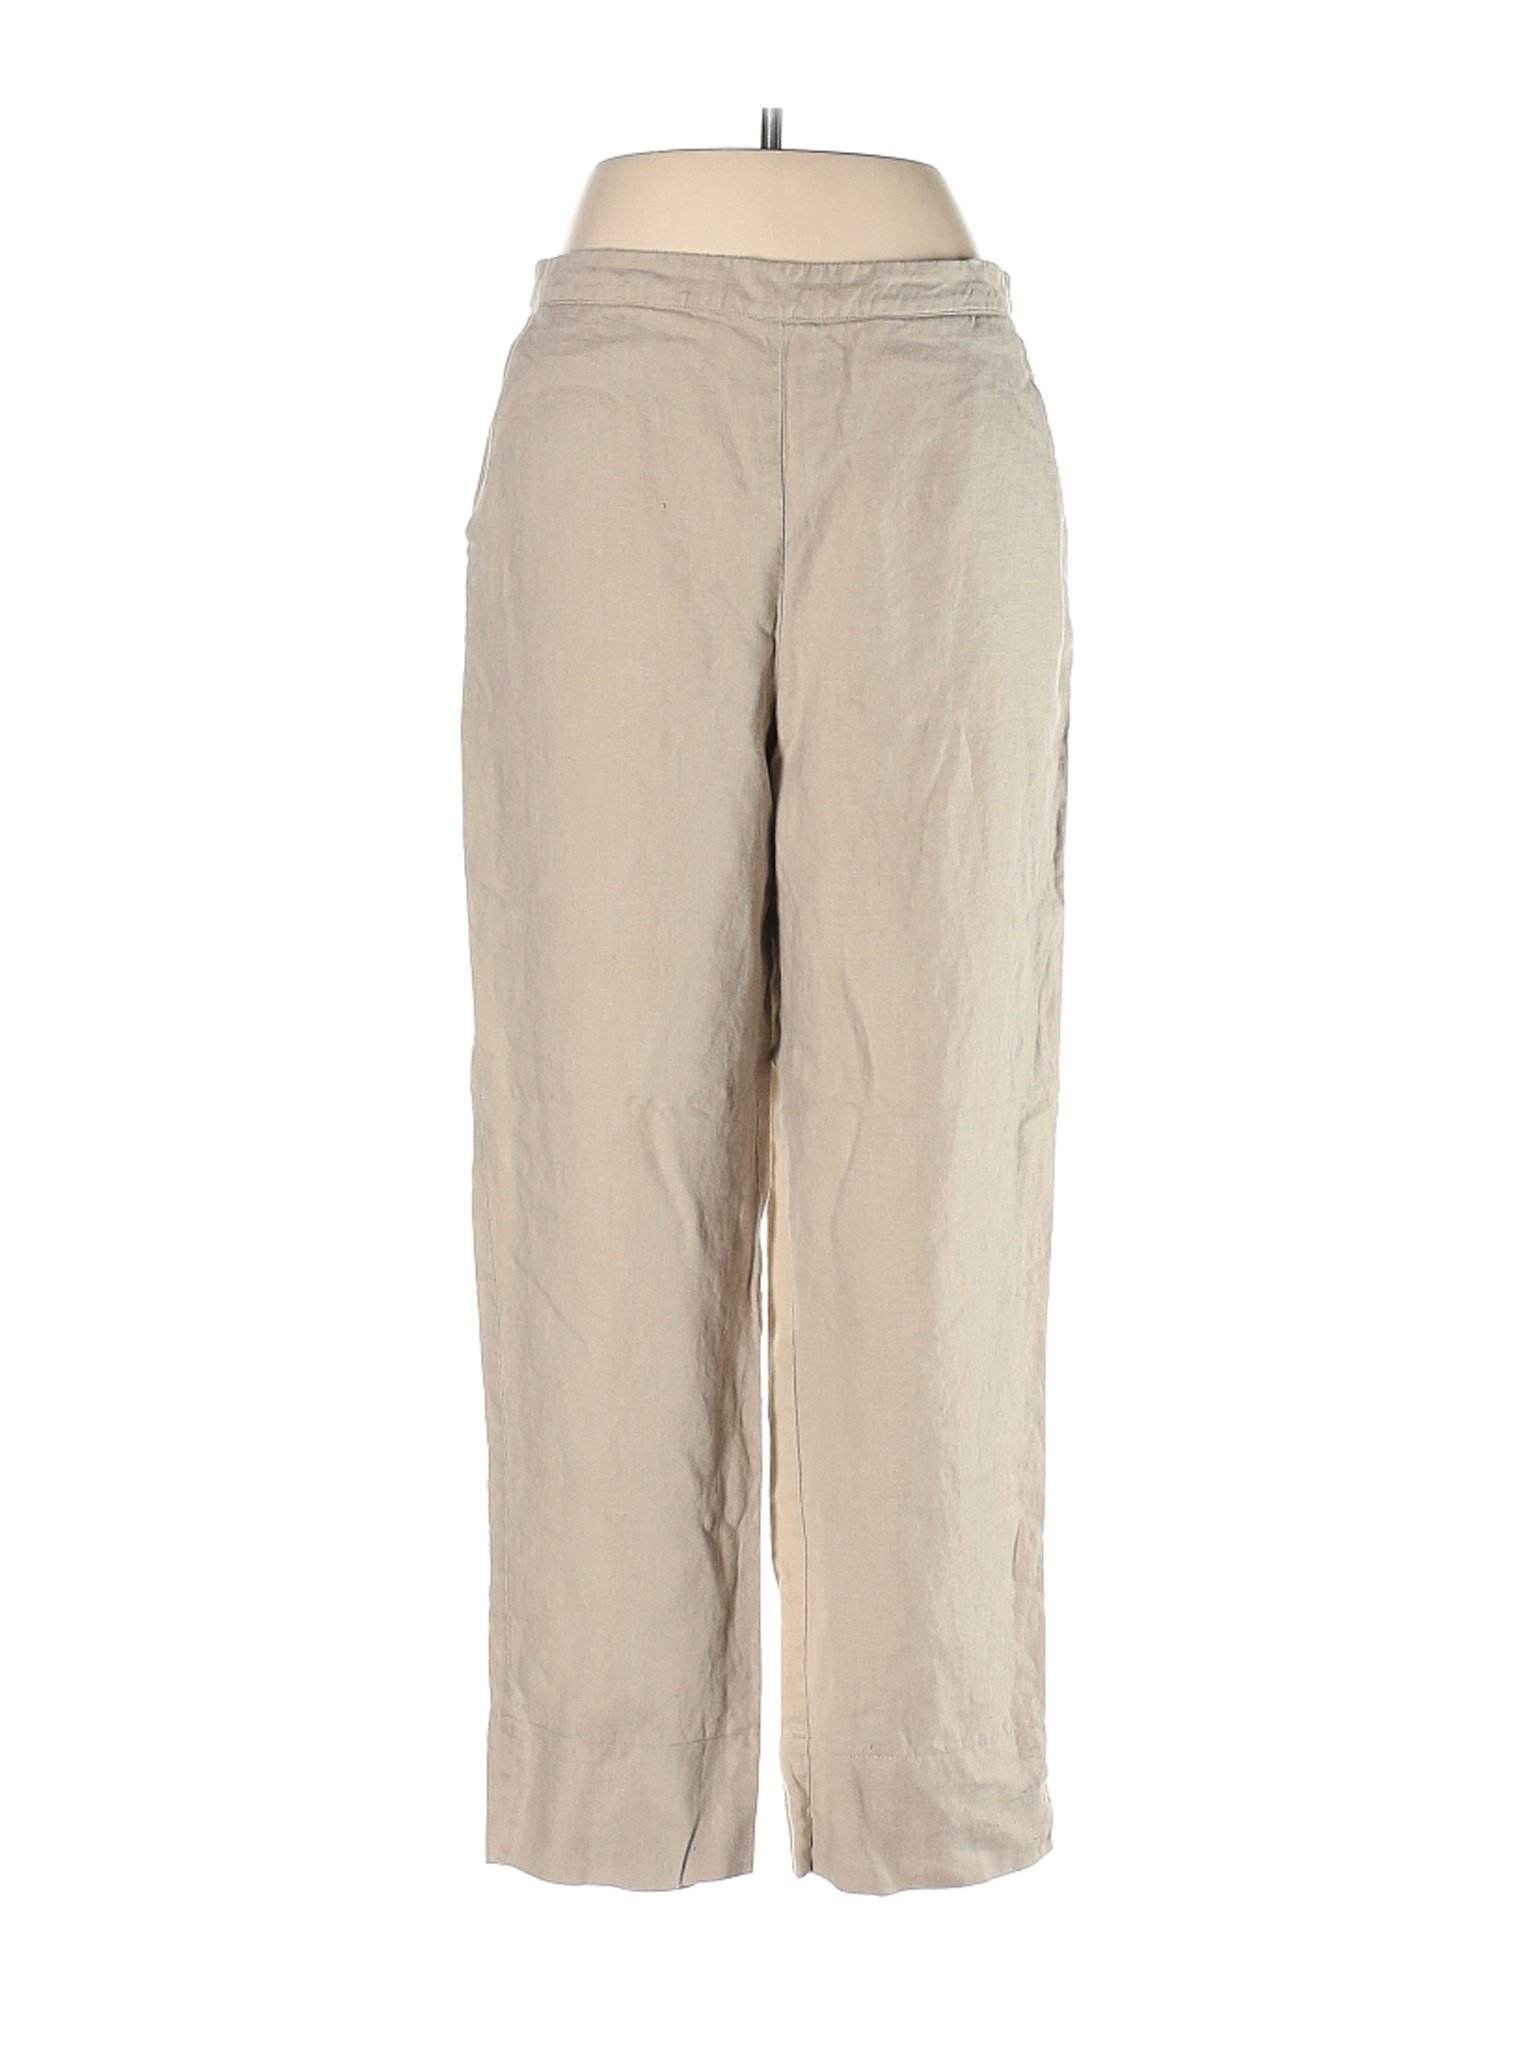 Peck & Peck Women Brown Linen Pants M | eBay